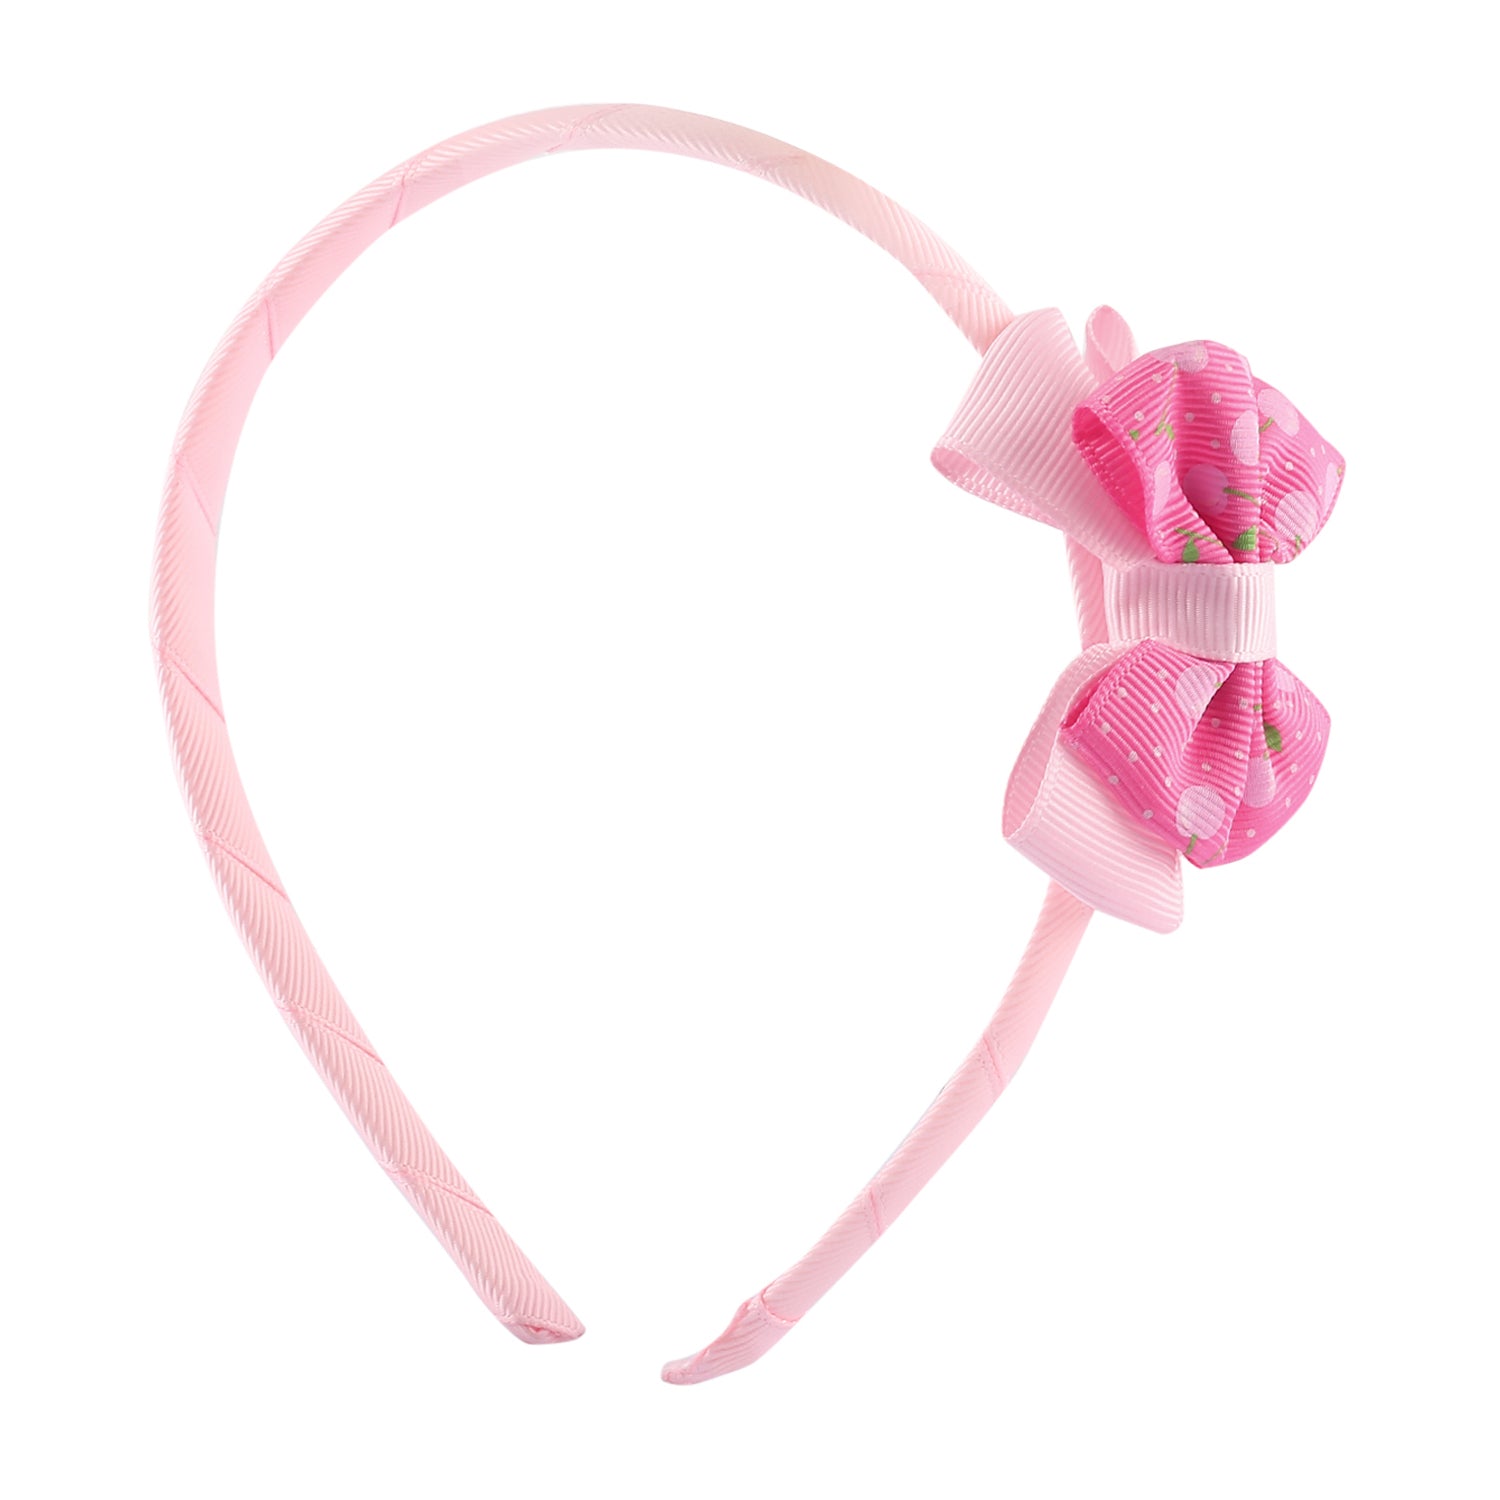 Polka Dot Pink Headband Set - Baby Moo